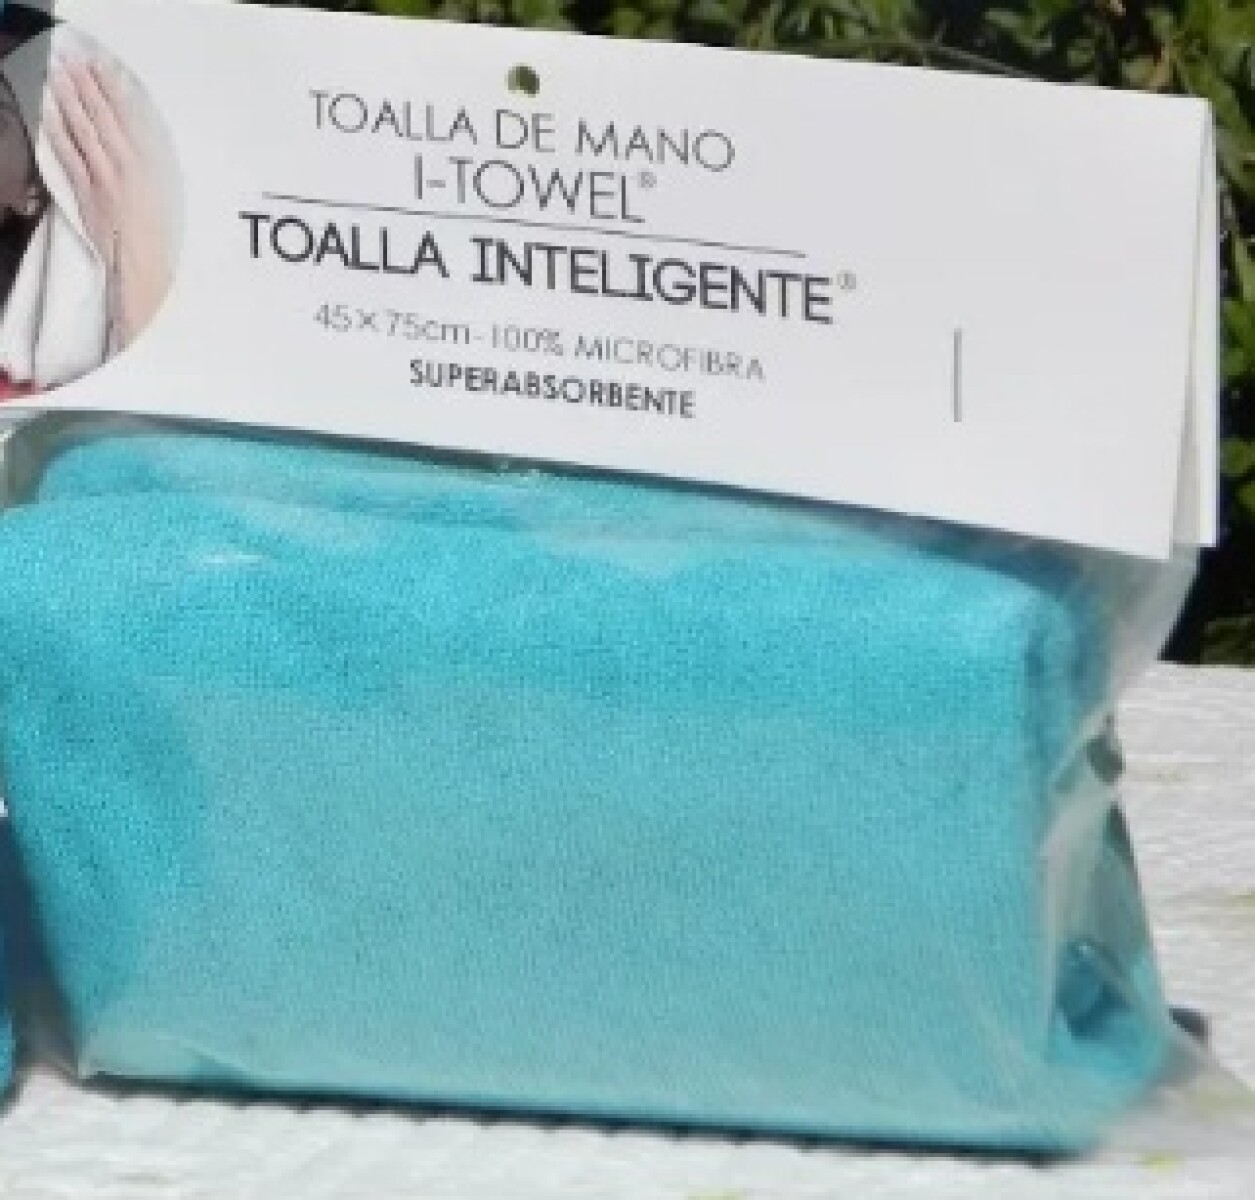 I Towel Toalla Mano - Varios 